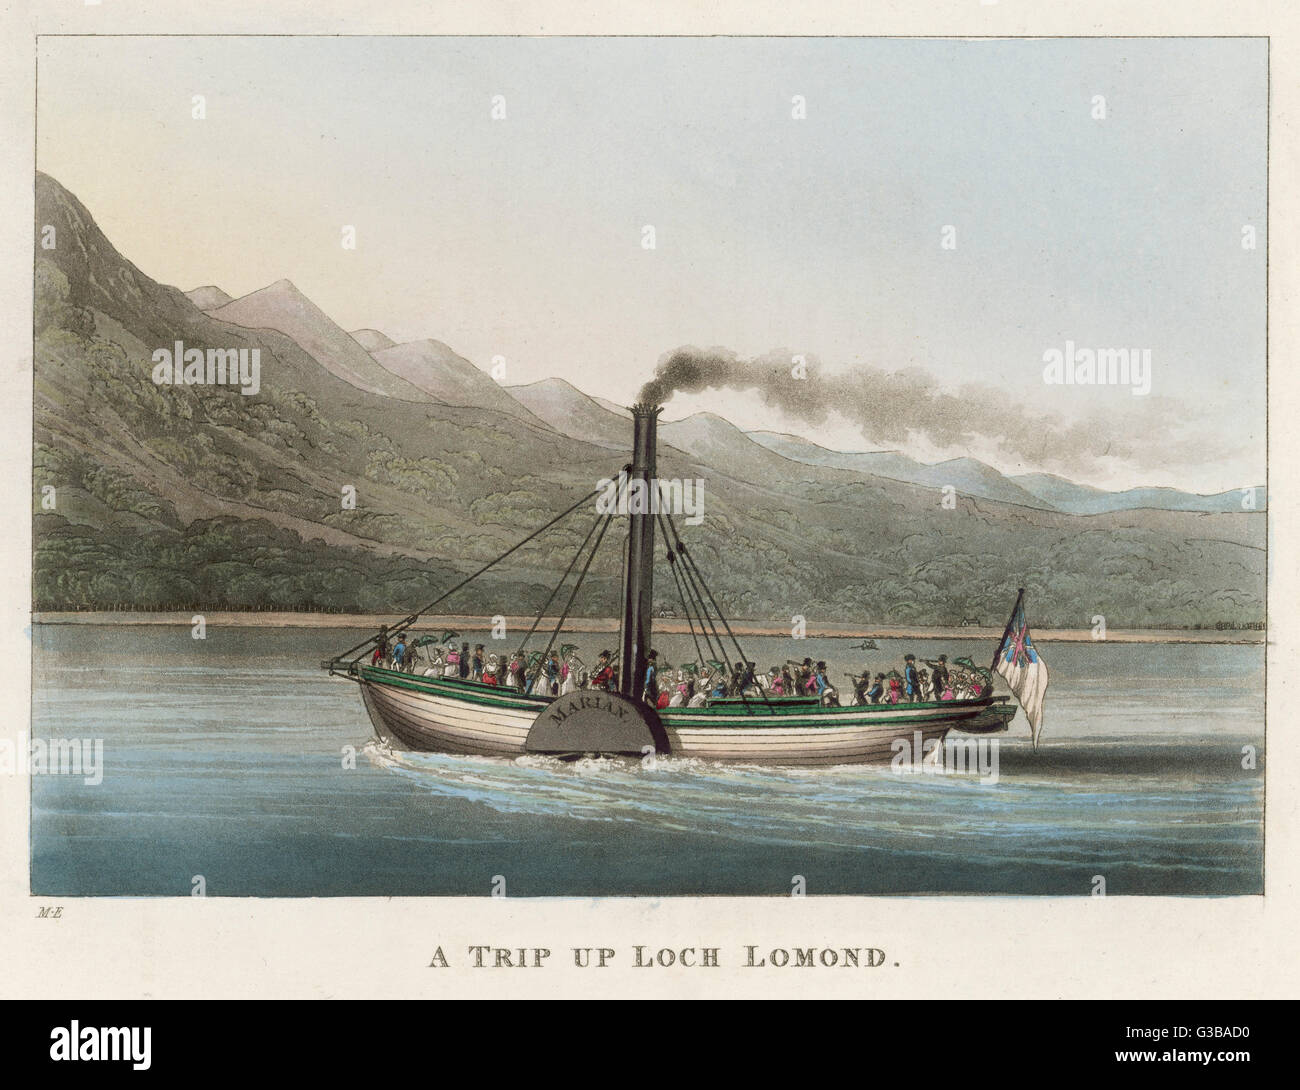 La 'Marion' vapeur à aubes transporte excursionnistes cruising parmi les banques de bonny bonny Loch Lomond. Date : 1825 Banque D'Images